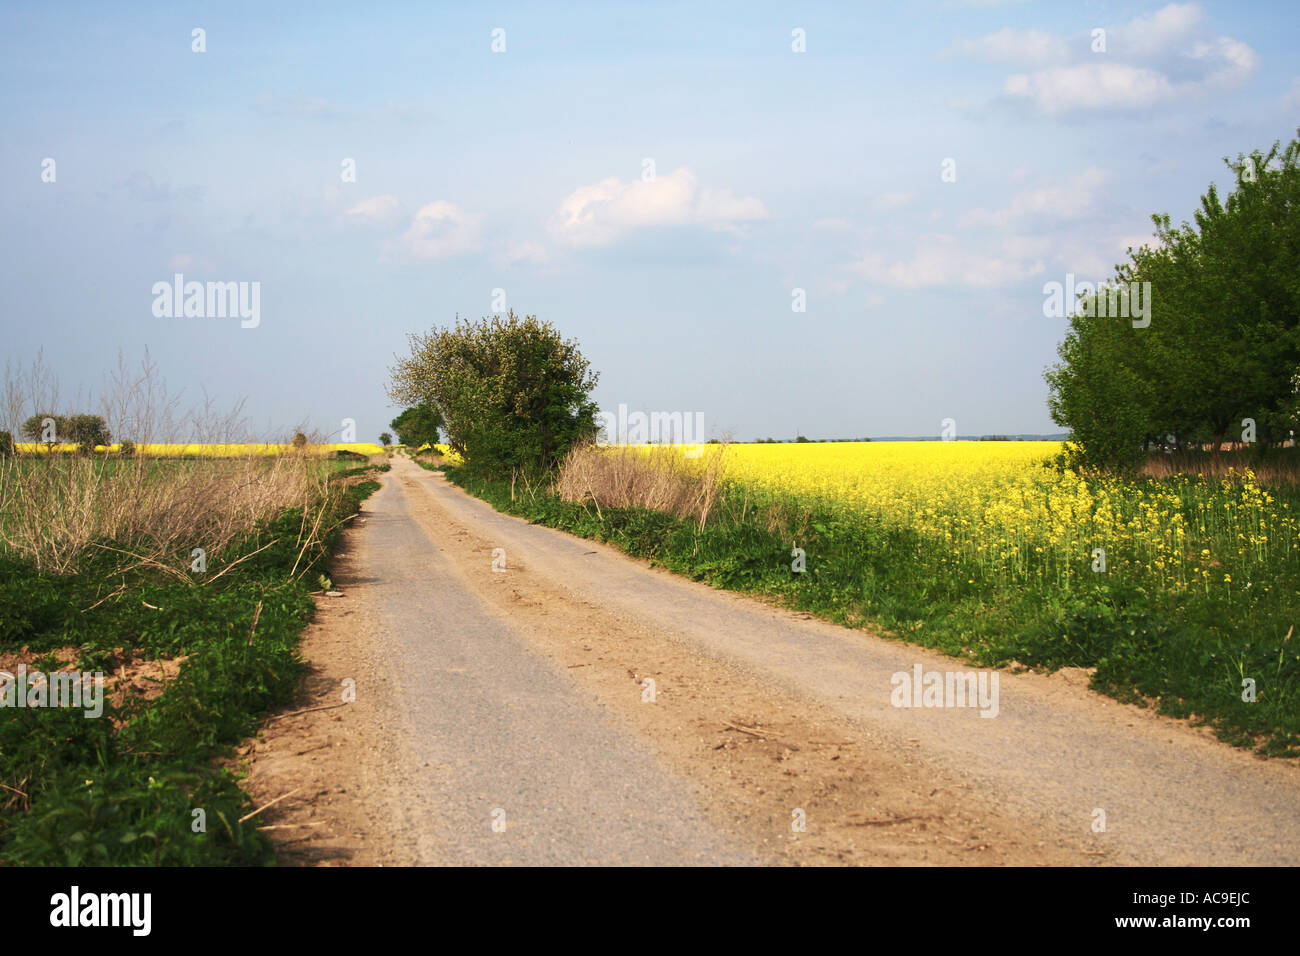 Chemin de terre rural menant à travers des champs verts et des fleurs de colza jaune sous un ciel bleu clair. Banque D'Images